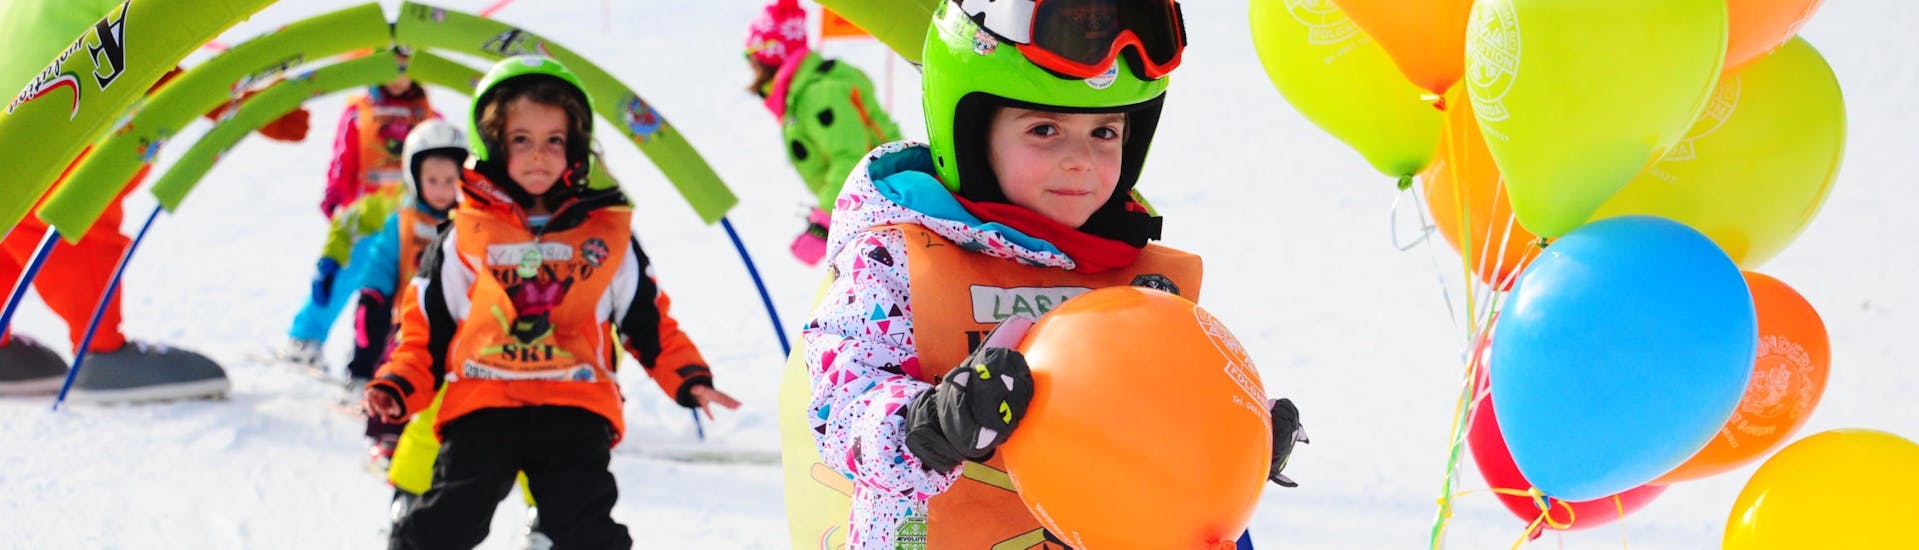 Les cours de ski pour enfants (4-13 ans) - tous niveaux de l'école de ski AEvolution Folgarida se déroulent dans l'espace de l'école ; un enfant a franchi les obstacles et a gagné un ballon.